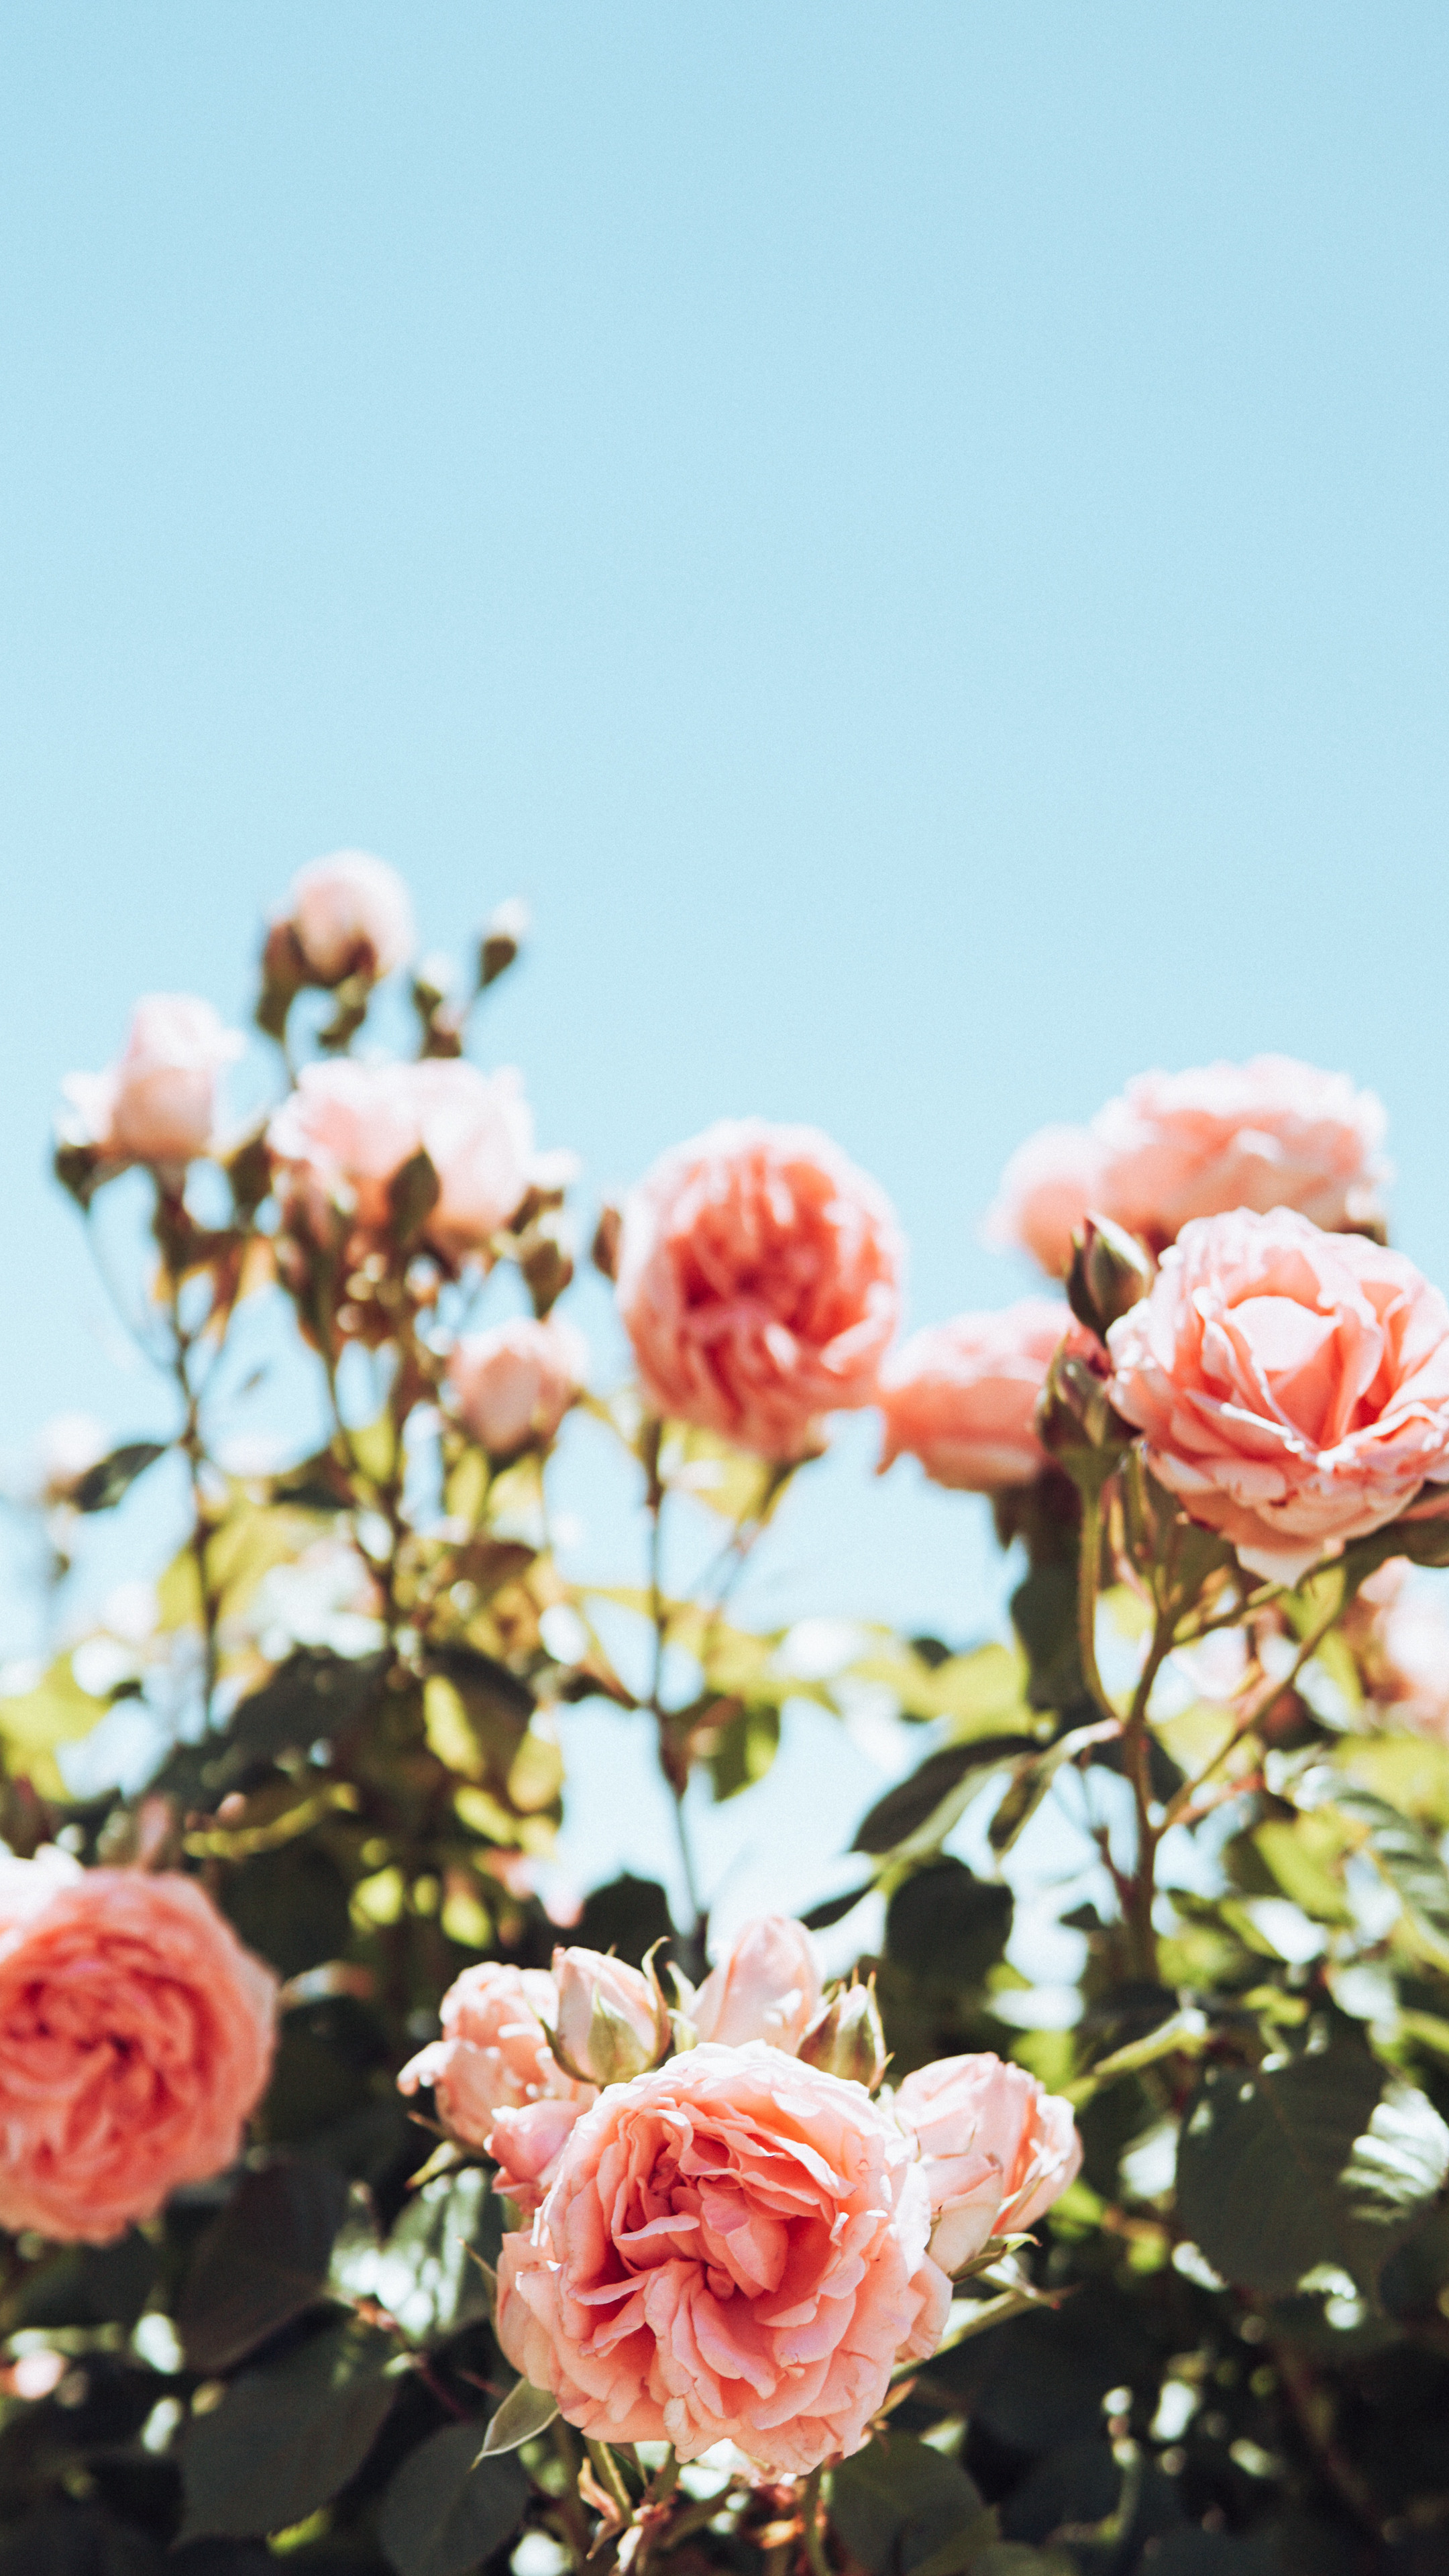 唯美的七彩颜色玫瑰花束4K手机壁纸